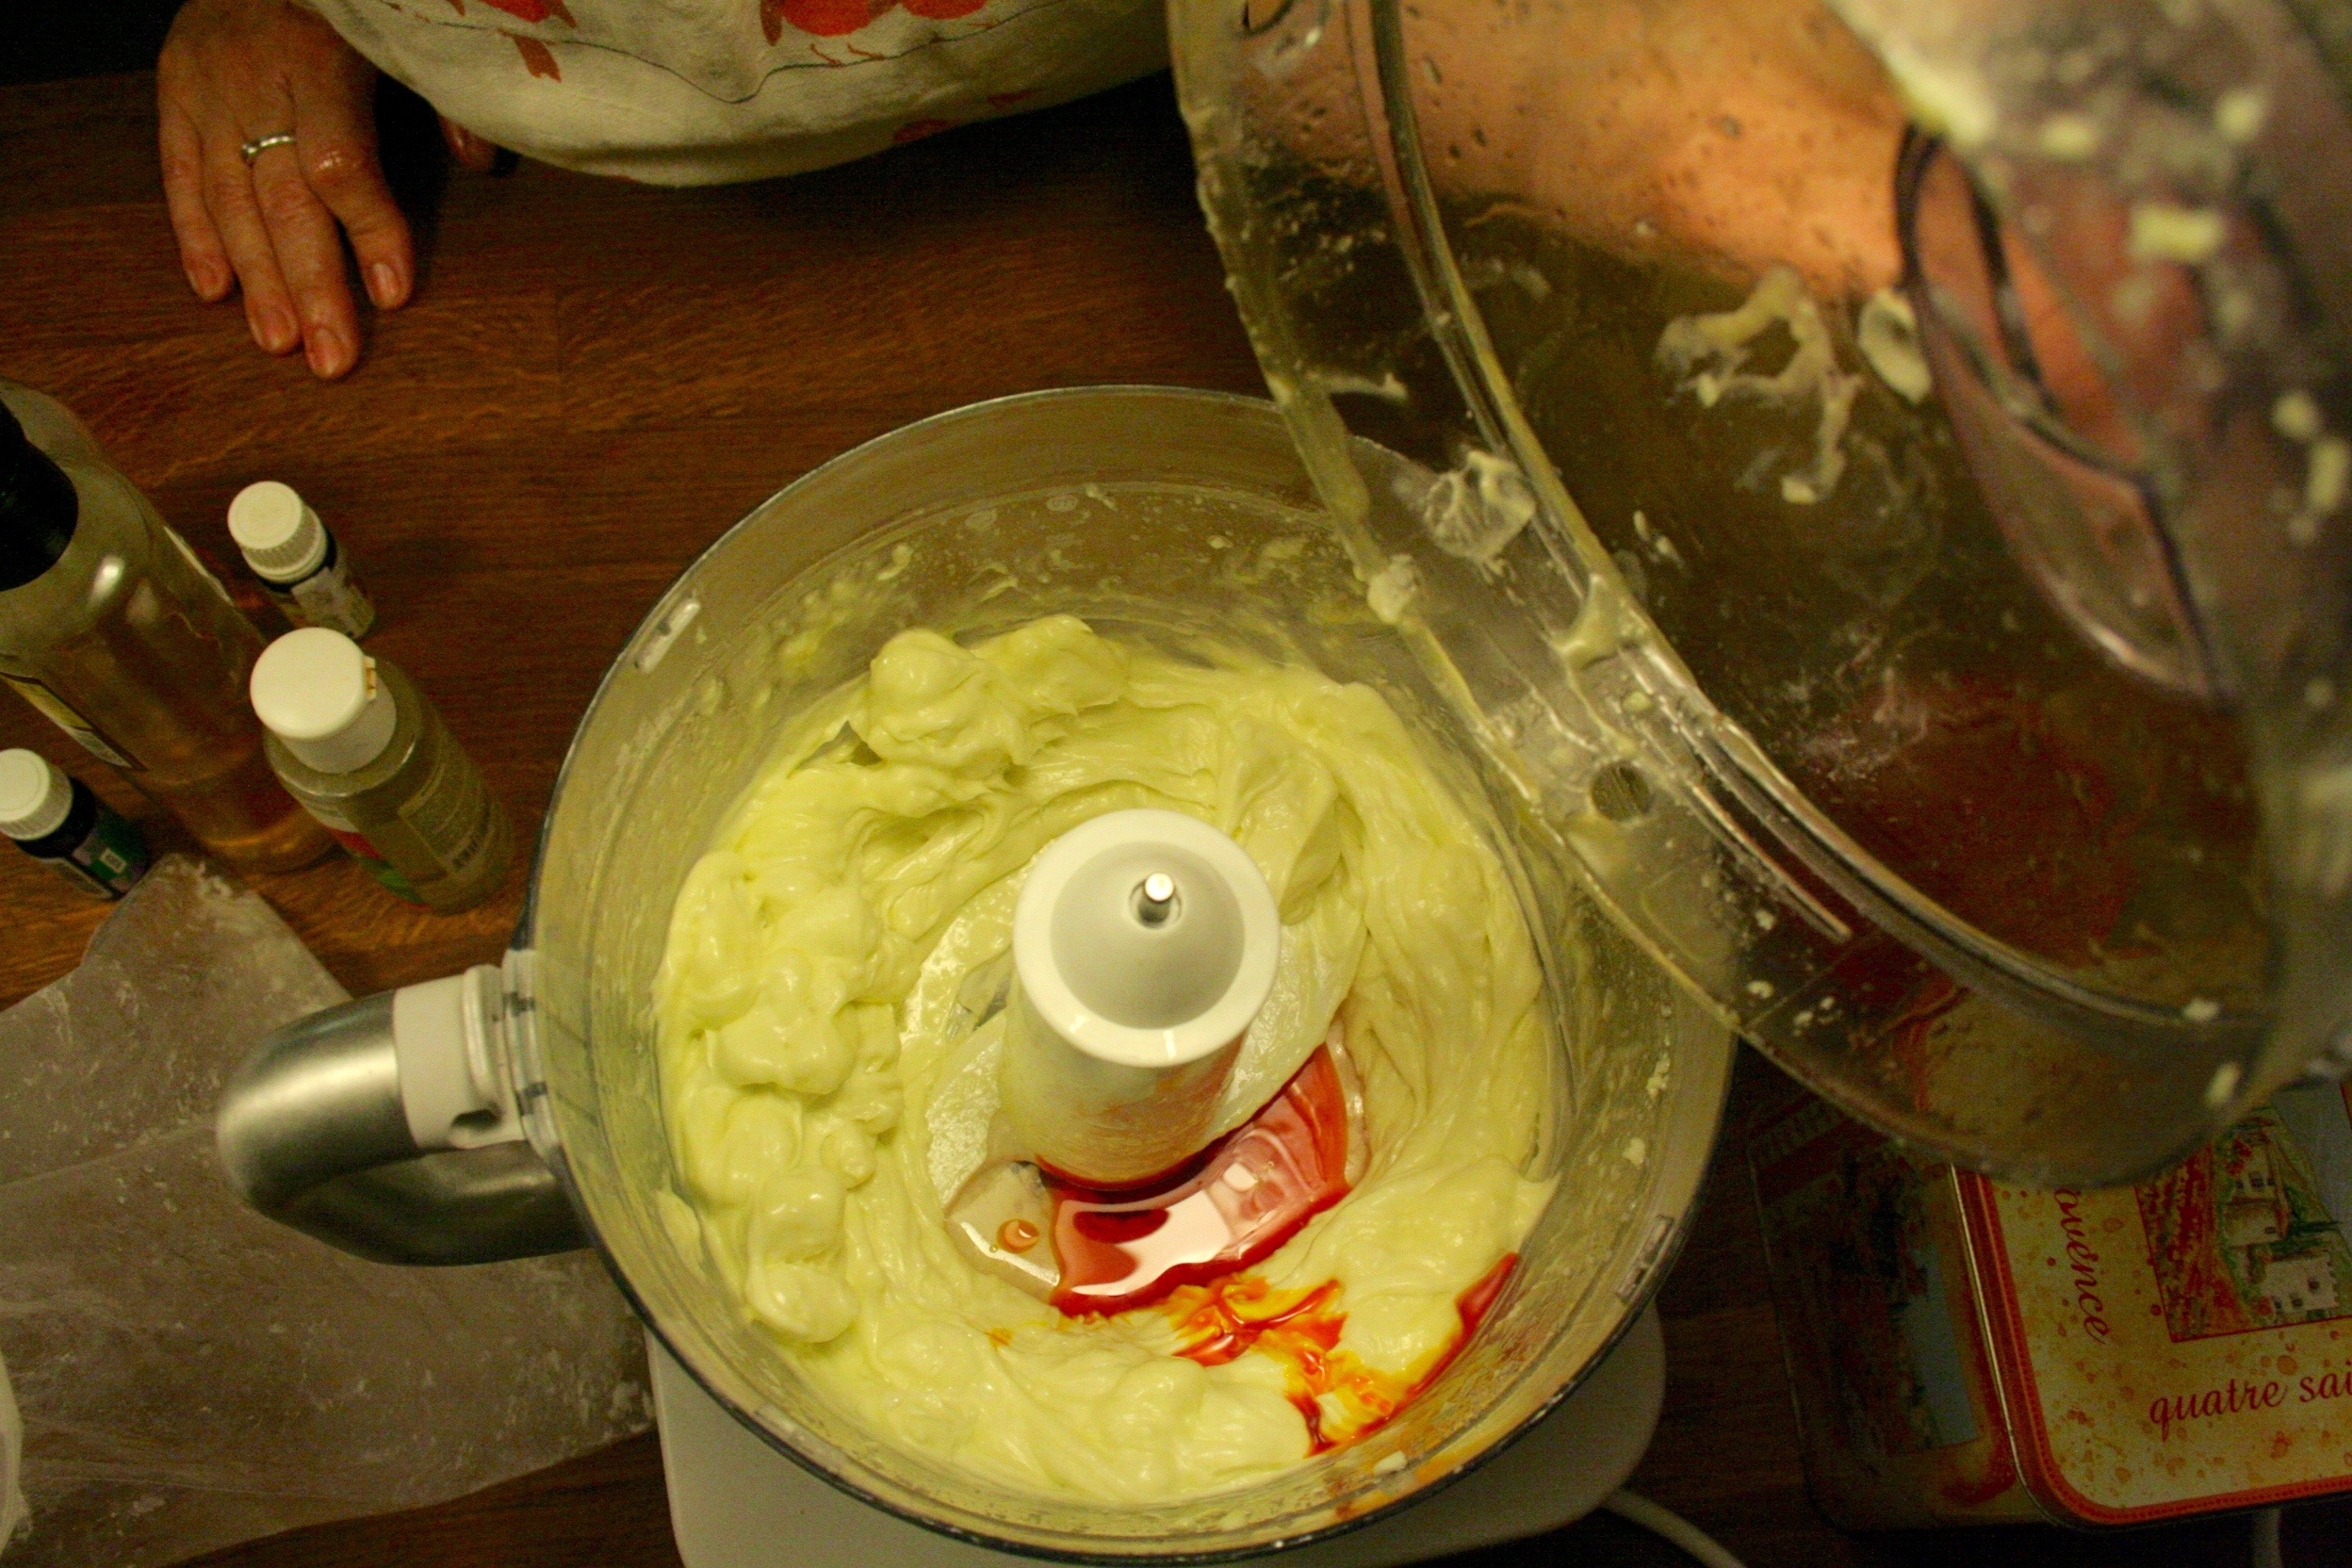 Proces šlehání másla za studena